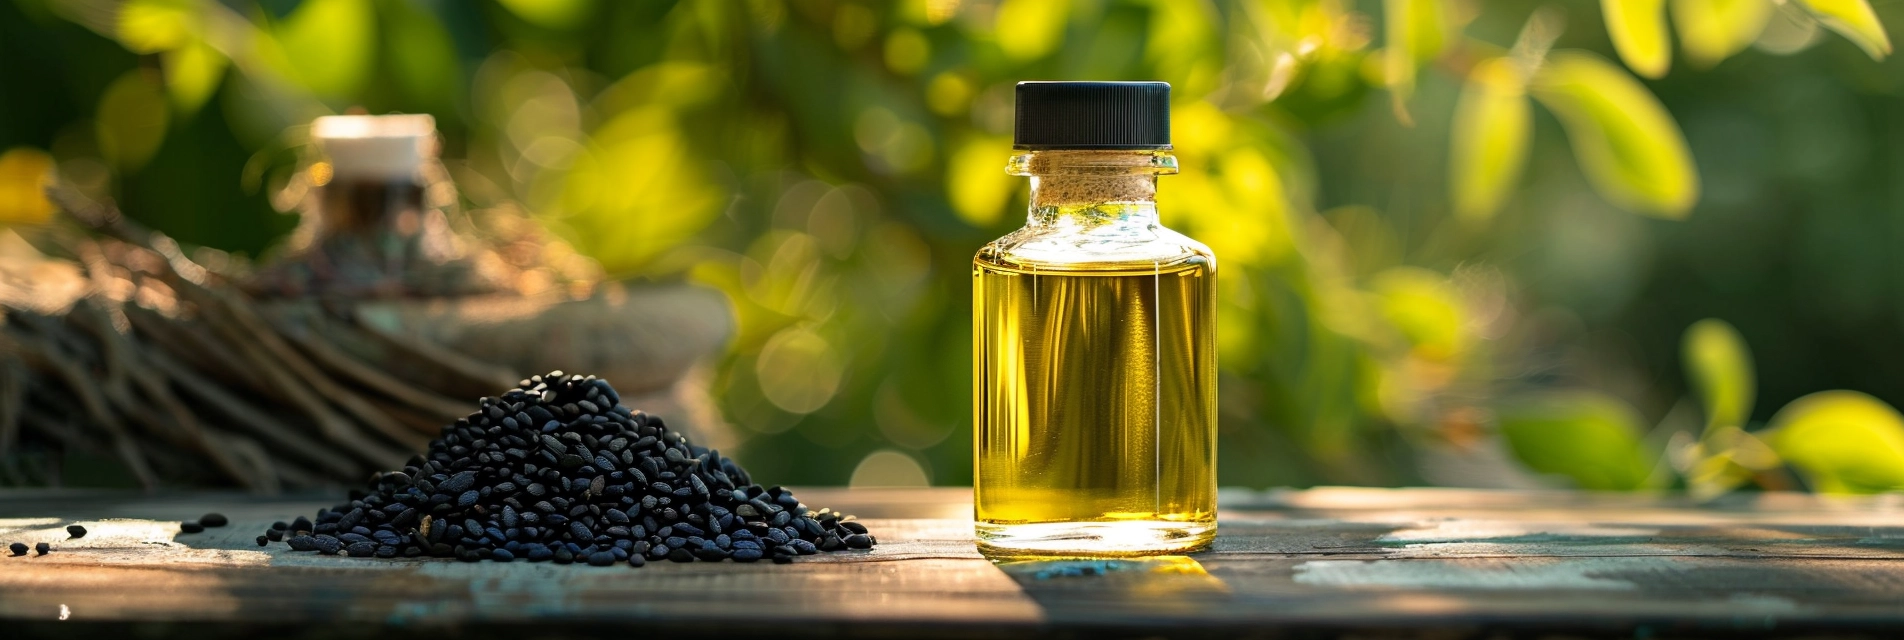 When should I take black cumin oil?